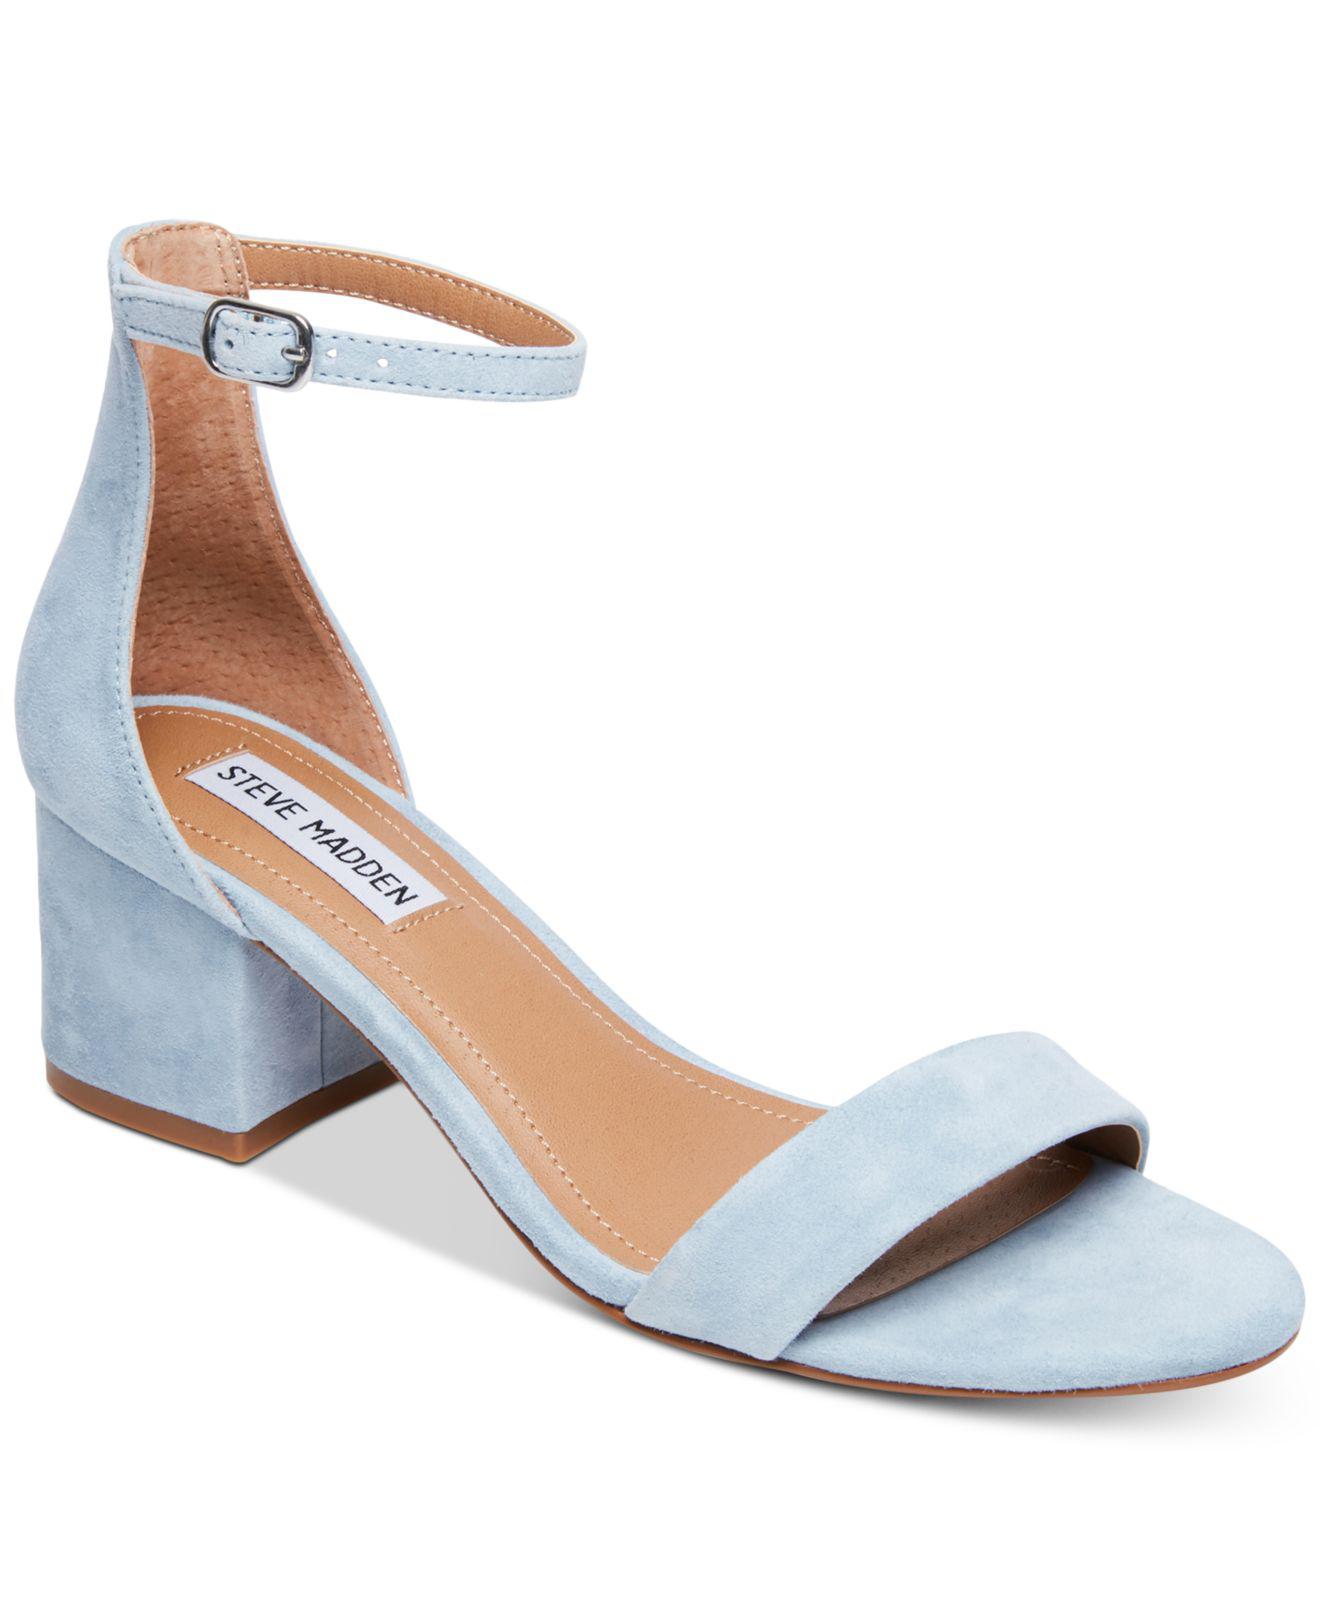 Irenee Block-heel Sandals in Blue Suede 